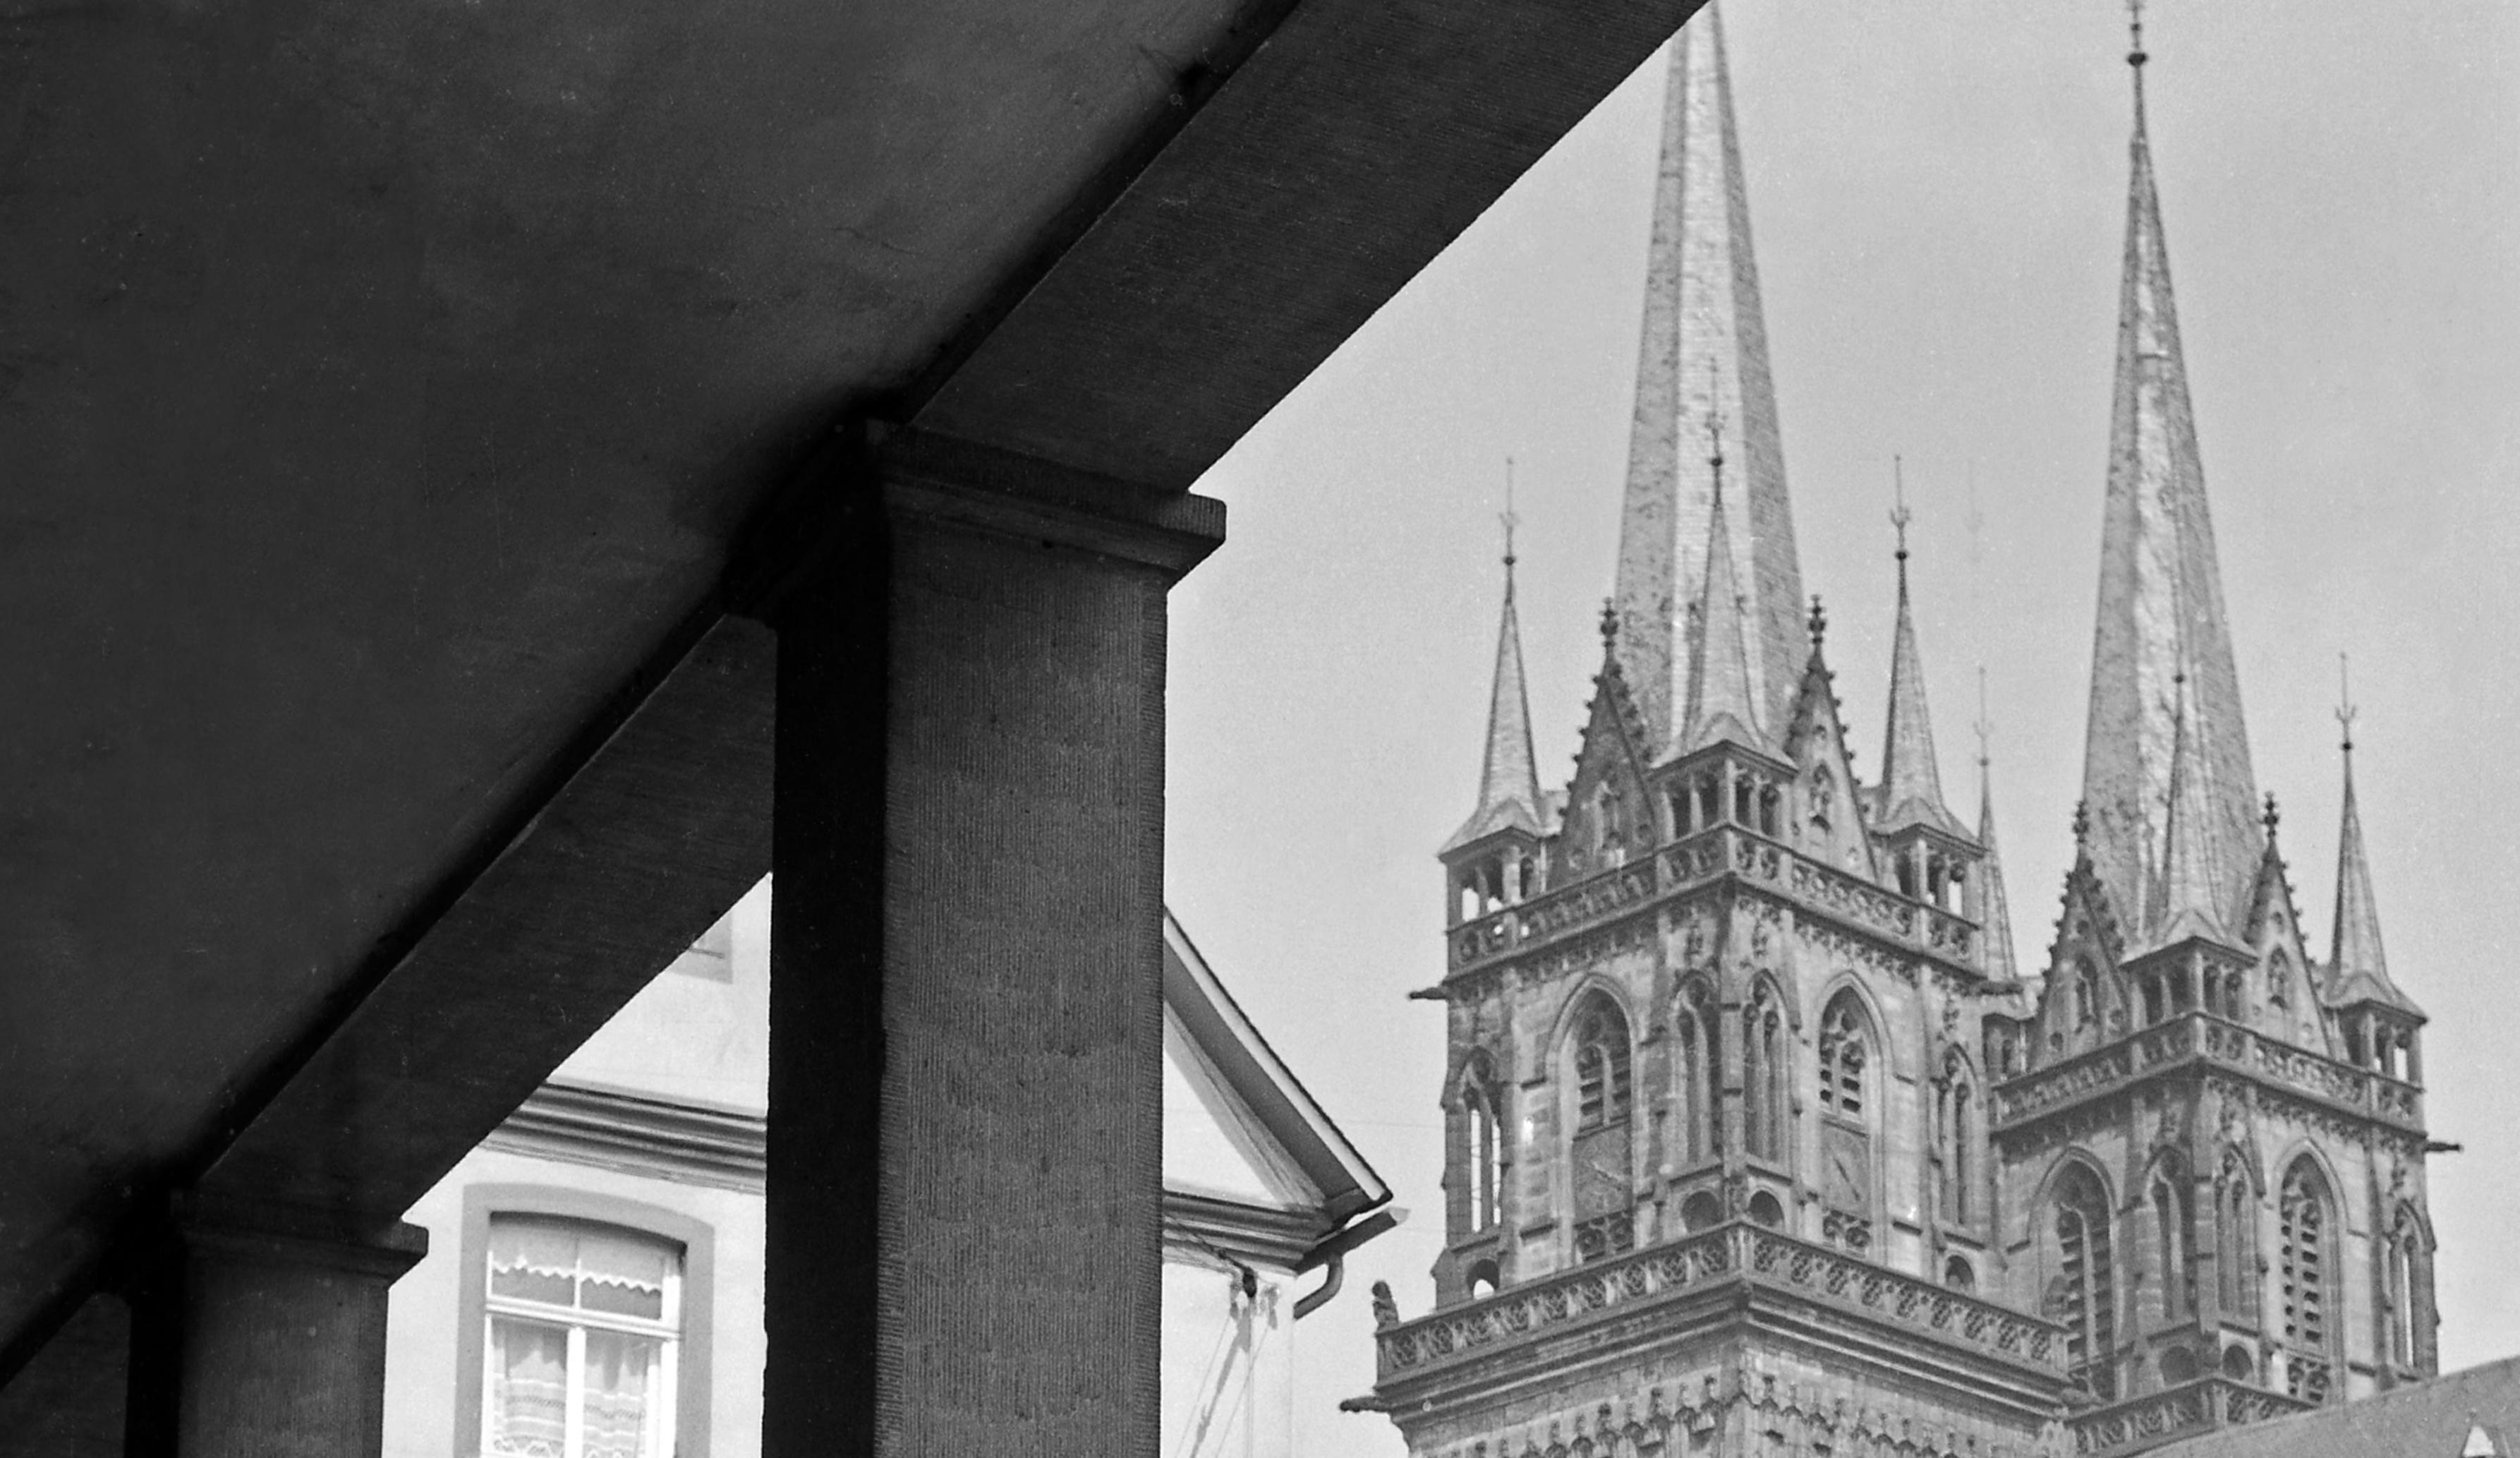 Protestantische St. Martin- Kirche in Kassel, Deutschland 1937 Später gedruckt  – Photograph von Karl Heinrich Lämmel